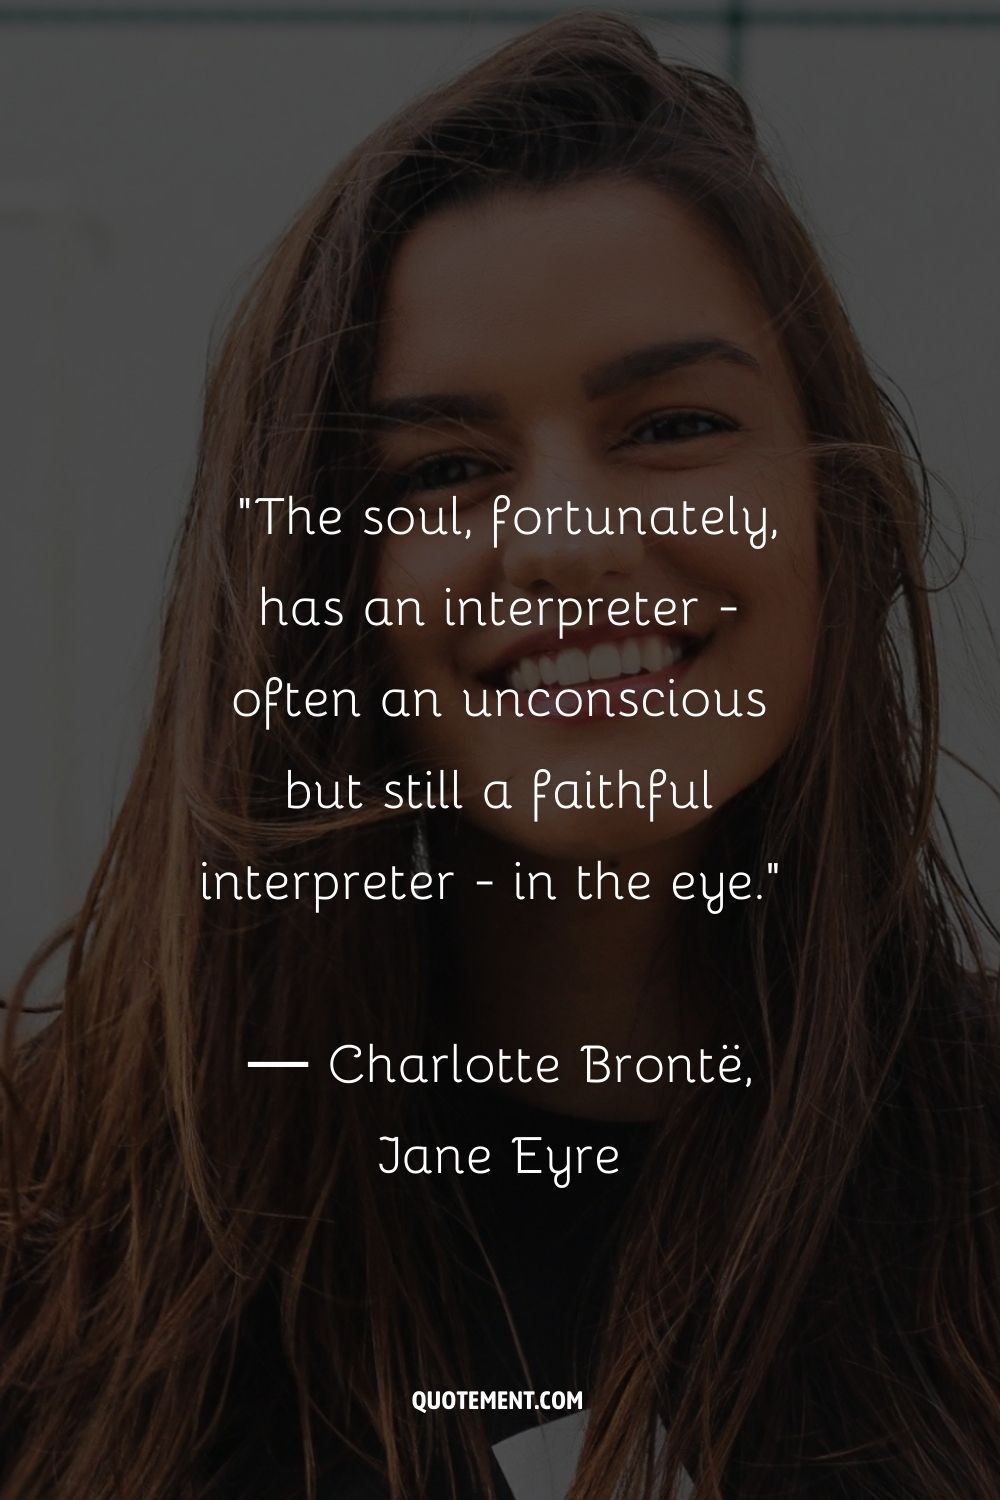 Afortunadamente, el alma tiene un intérprete -a menudo inconsciente, pero fiel- en el ojo...